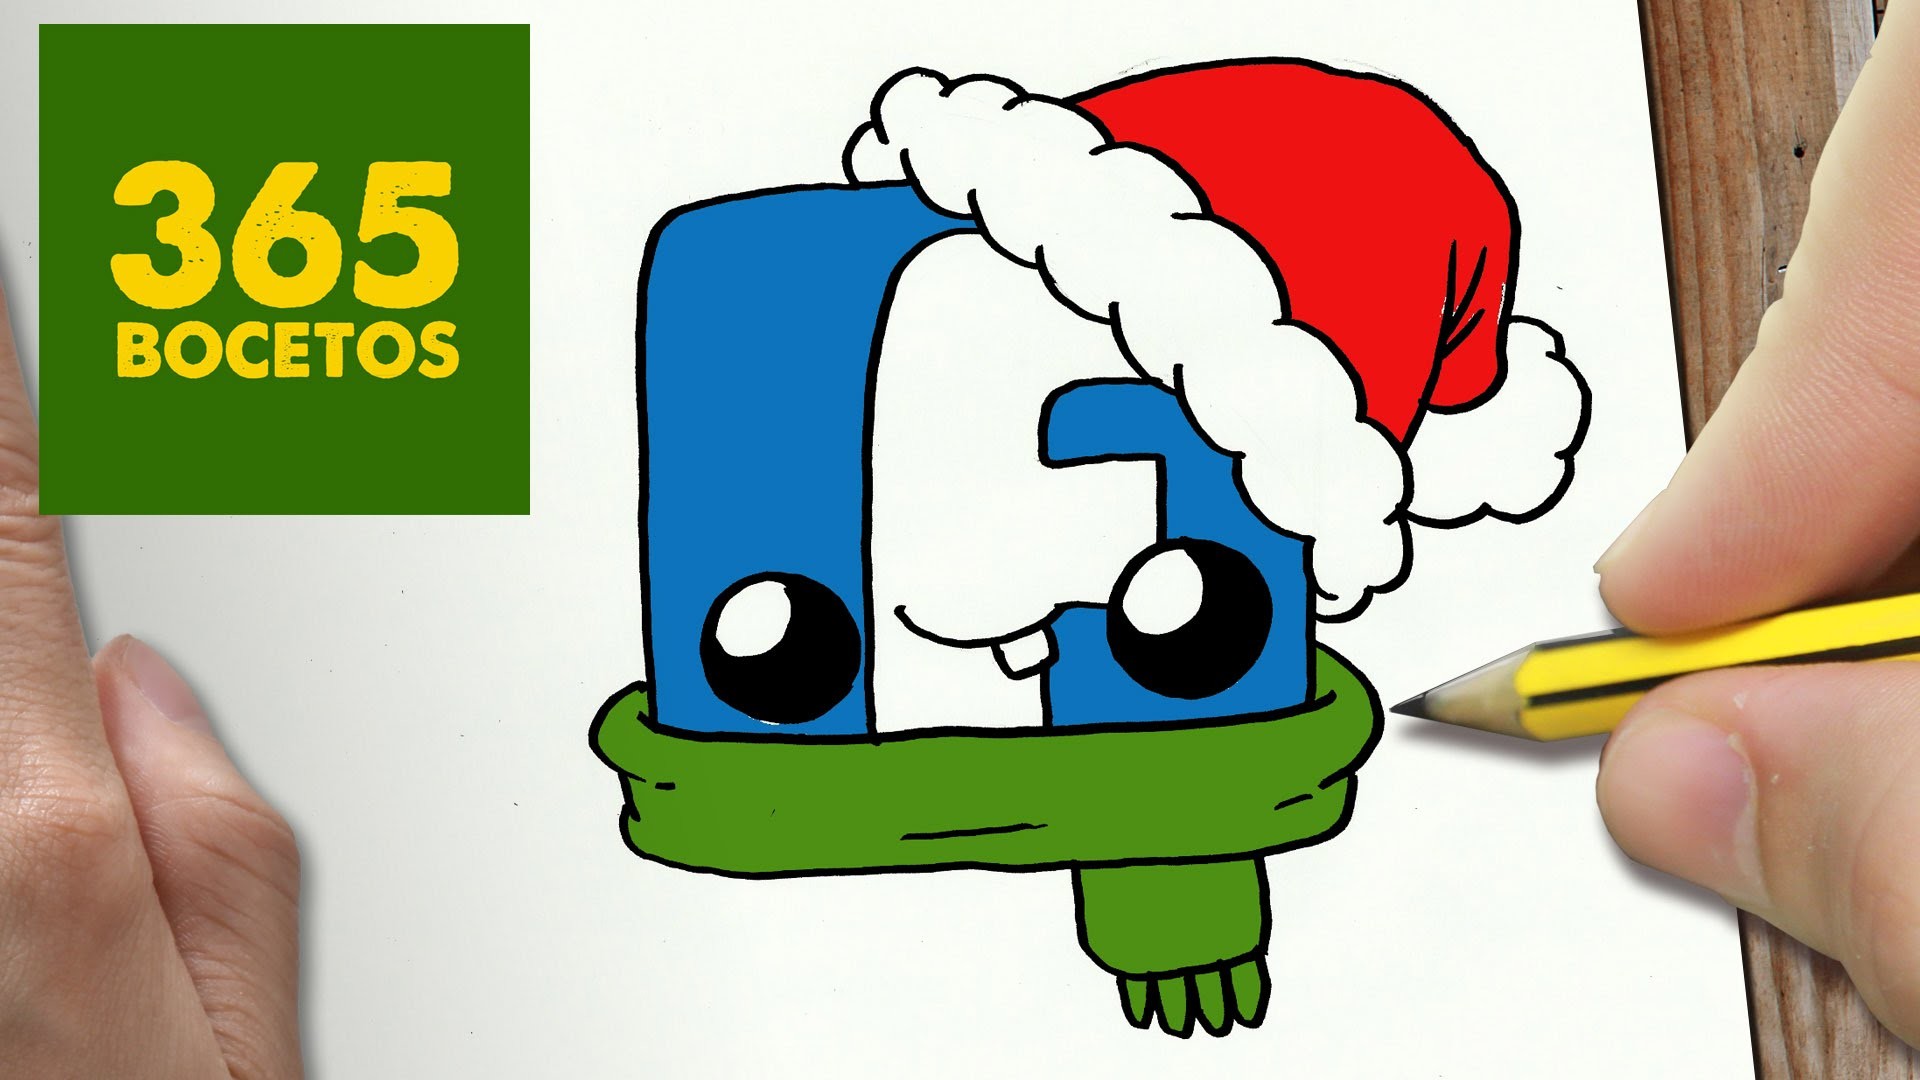 COMO DIBUJAR UN LOGO FACEBOOK PARA NAVIDAD PASO A PASO: Dibujos kawaii navideños - draw Facebook